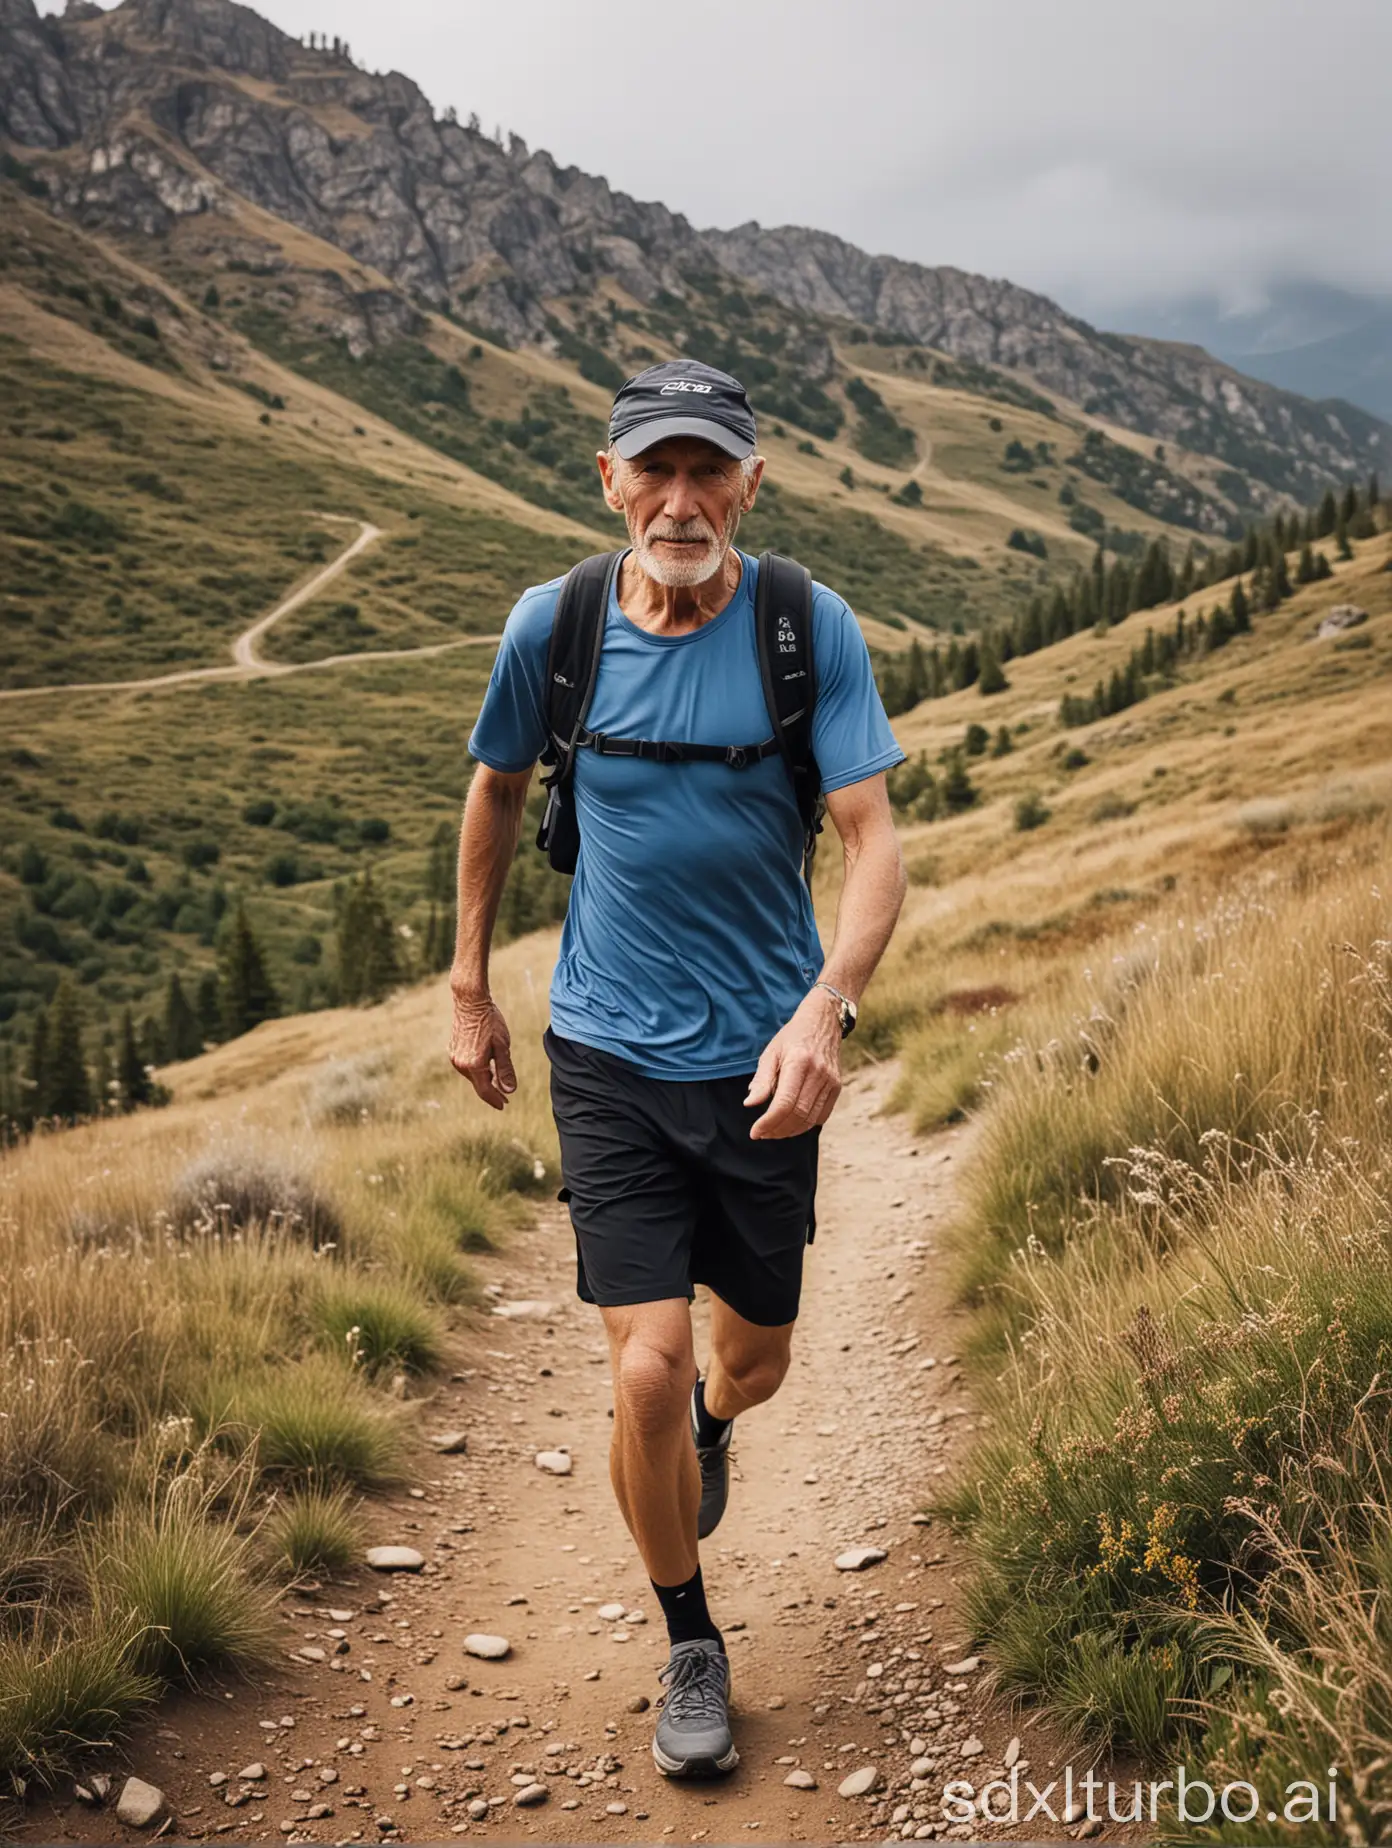 73-jähriger fitter Trailläufer in den Bergen, Mann
